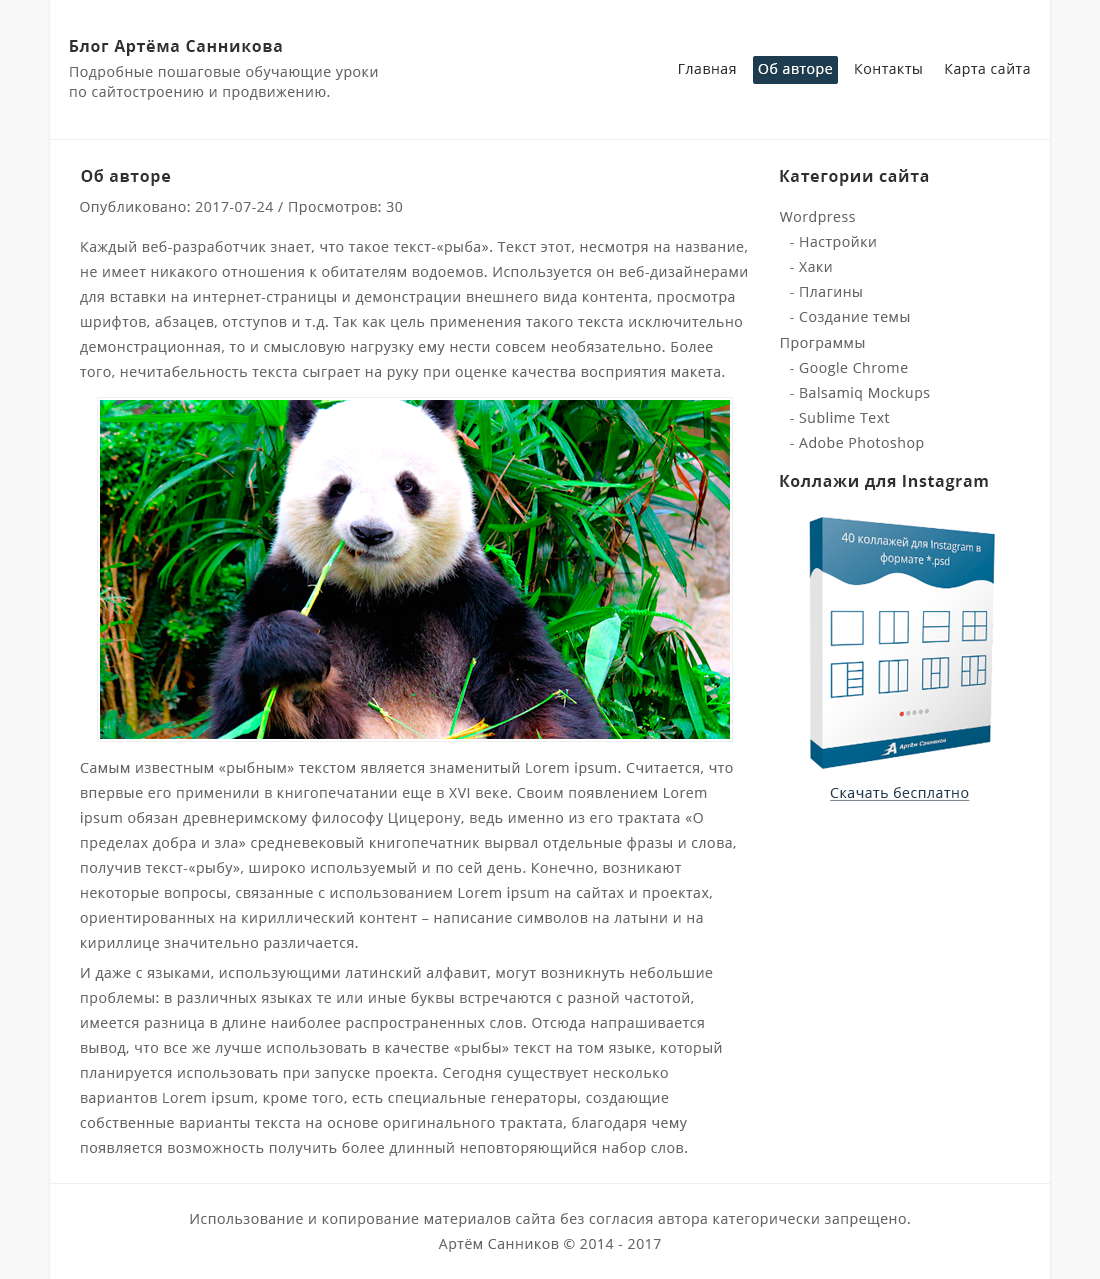 Дизайн страницы -page, для темы WordPress в Adobe Photoshop